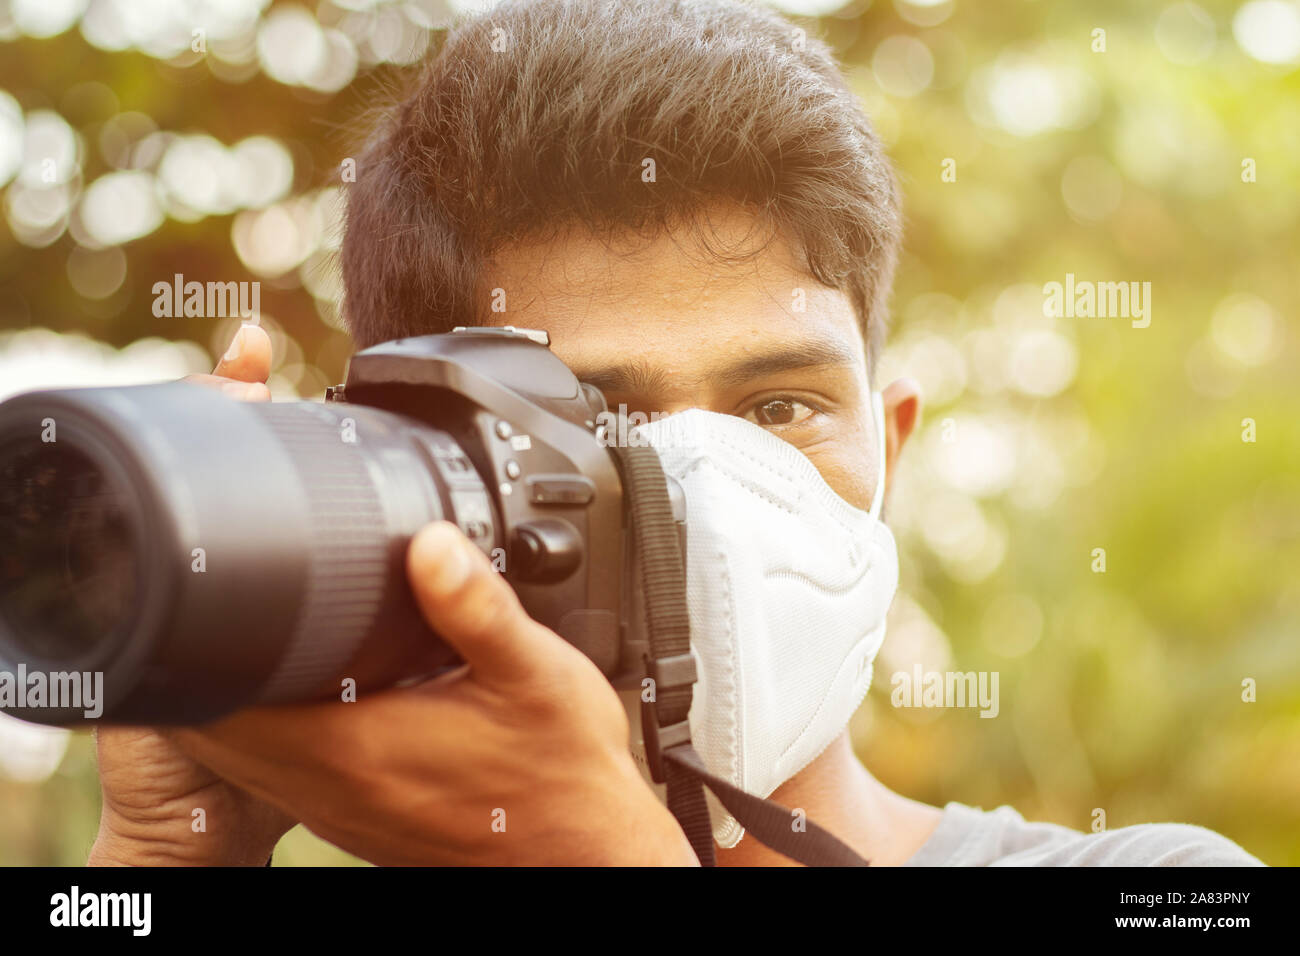 Le jeune photographe avec masque de la pollution - Concept de photojournalisme et ses risques. Banque D'Images